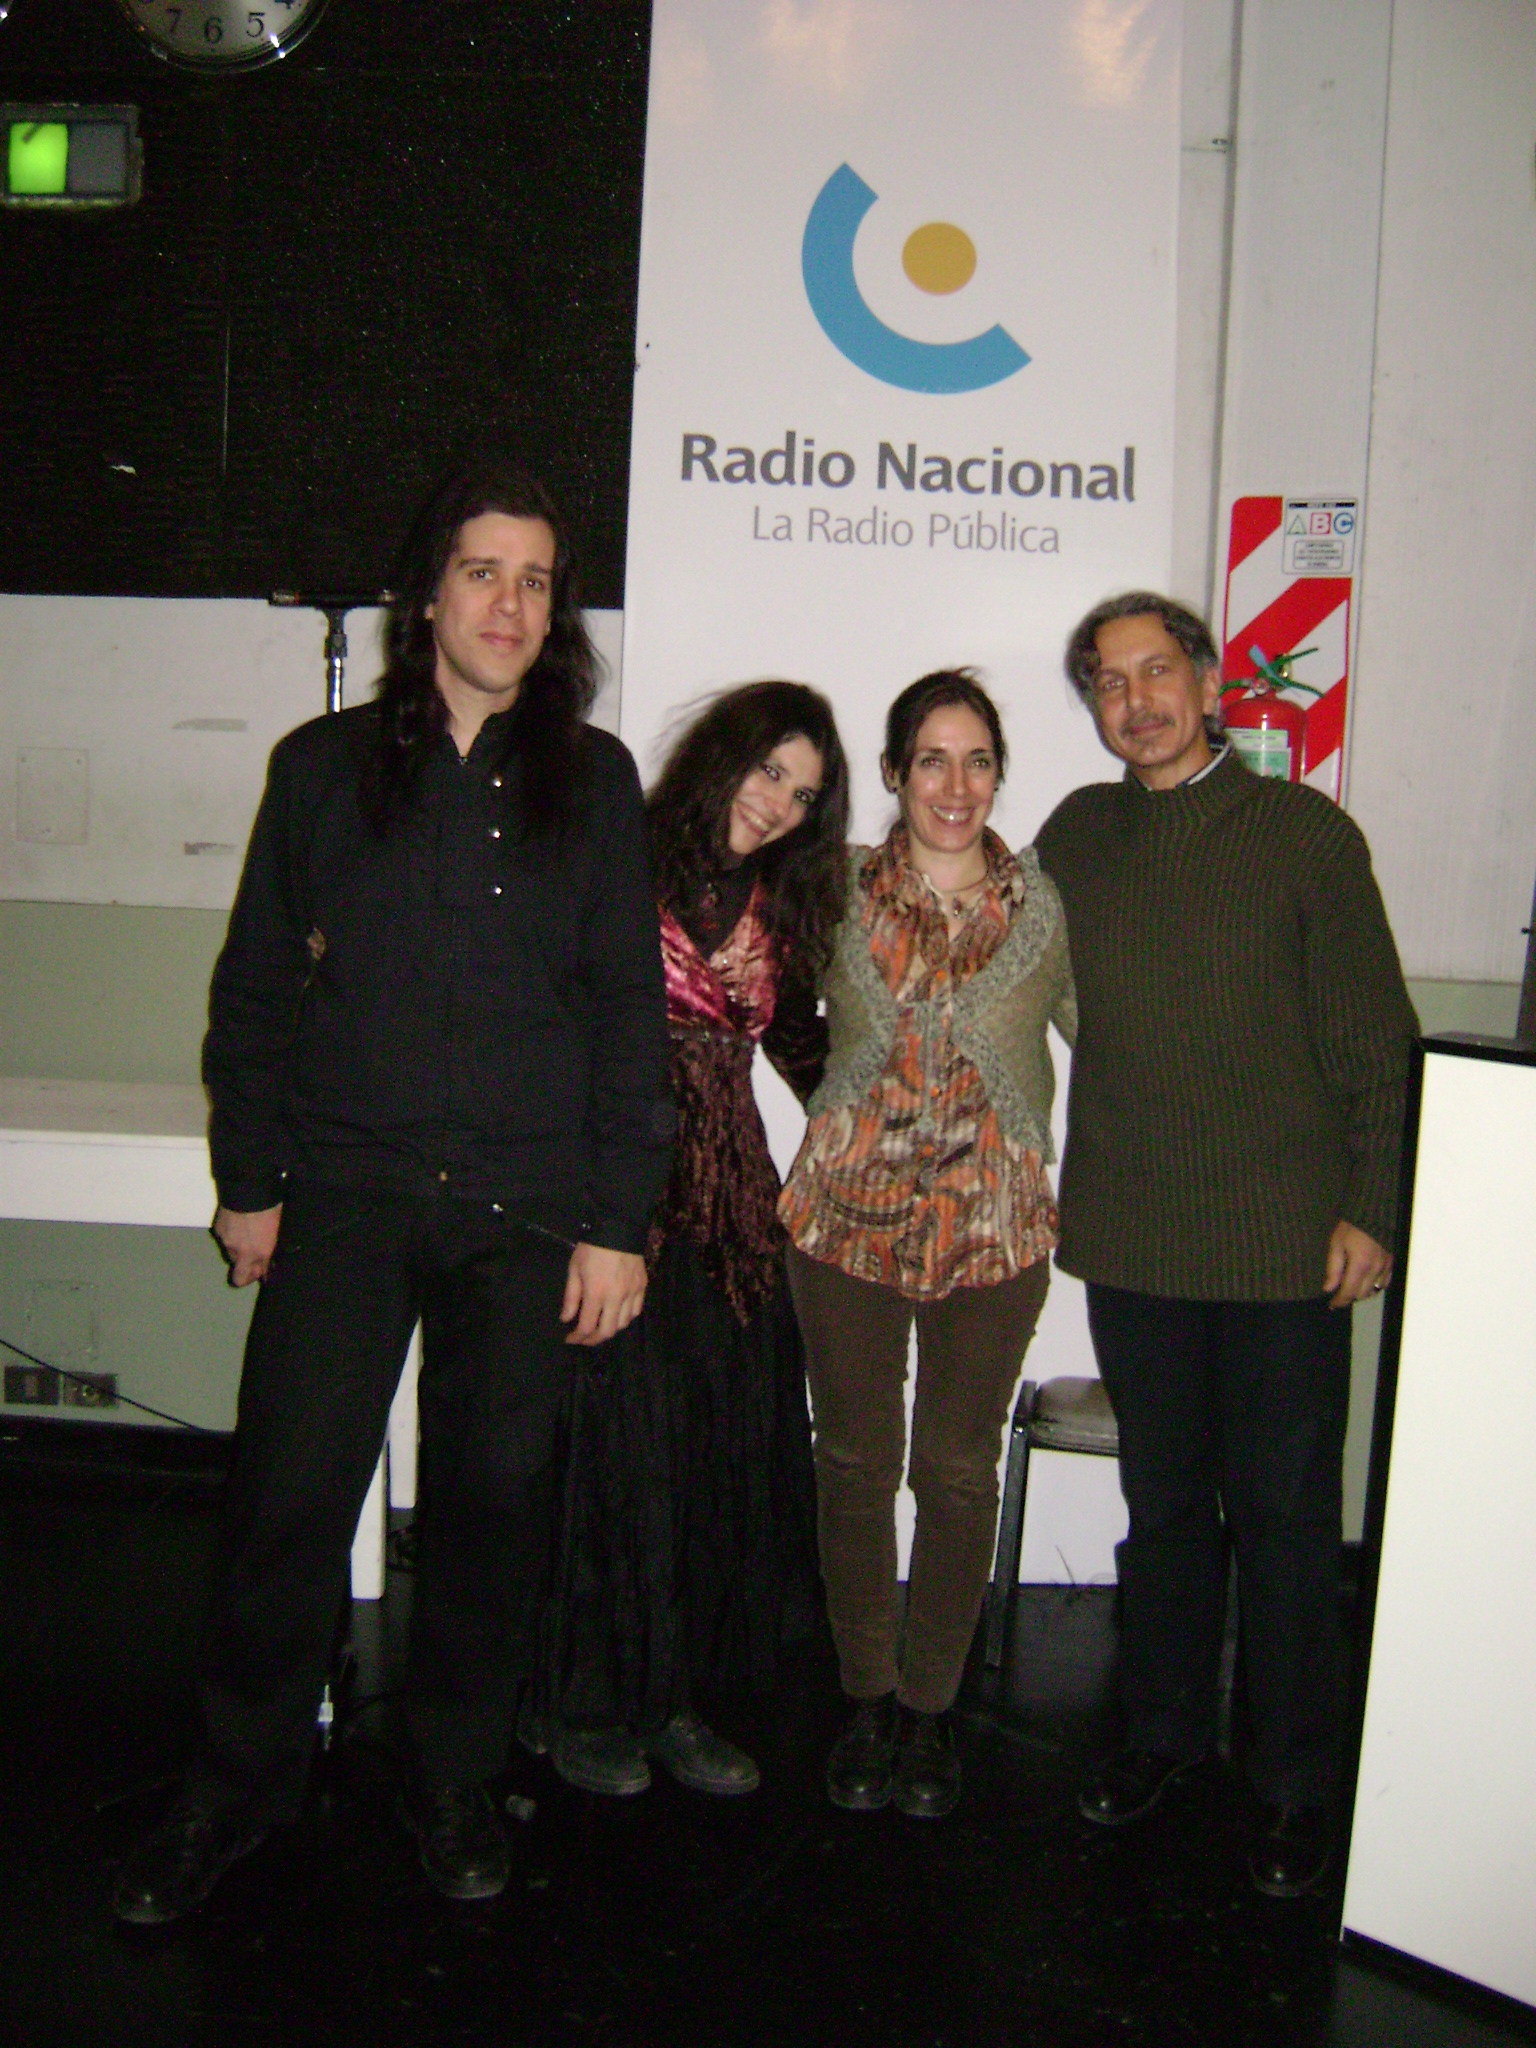 El evento se realizó este miércoles 28 en el auditorio de L.R.A Radio Nacional, Buenos Aires